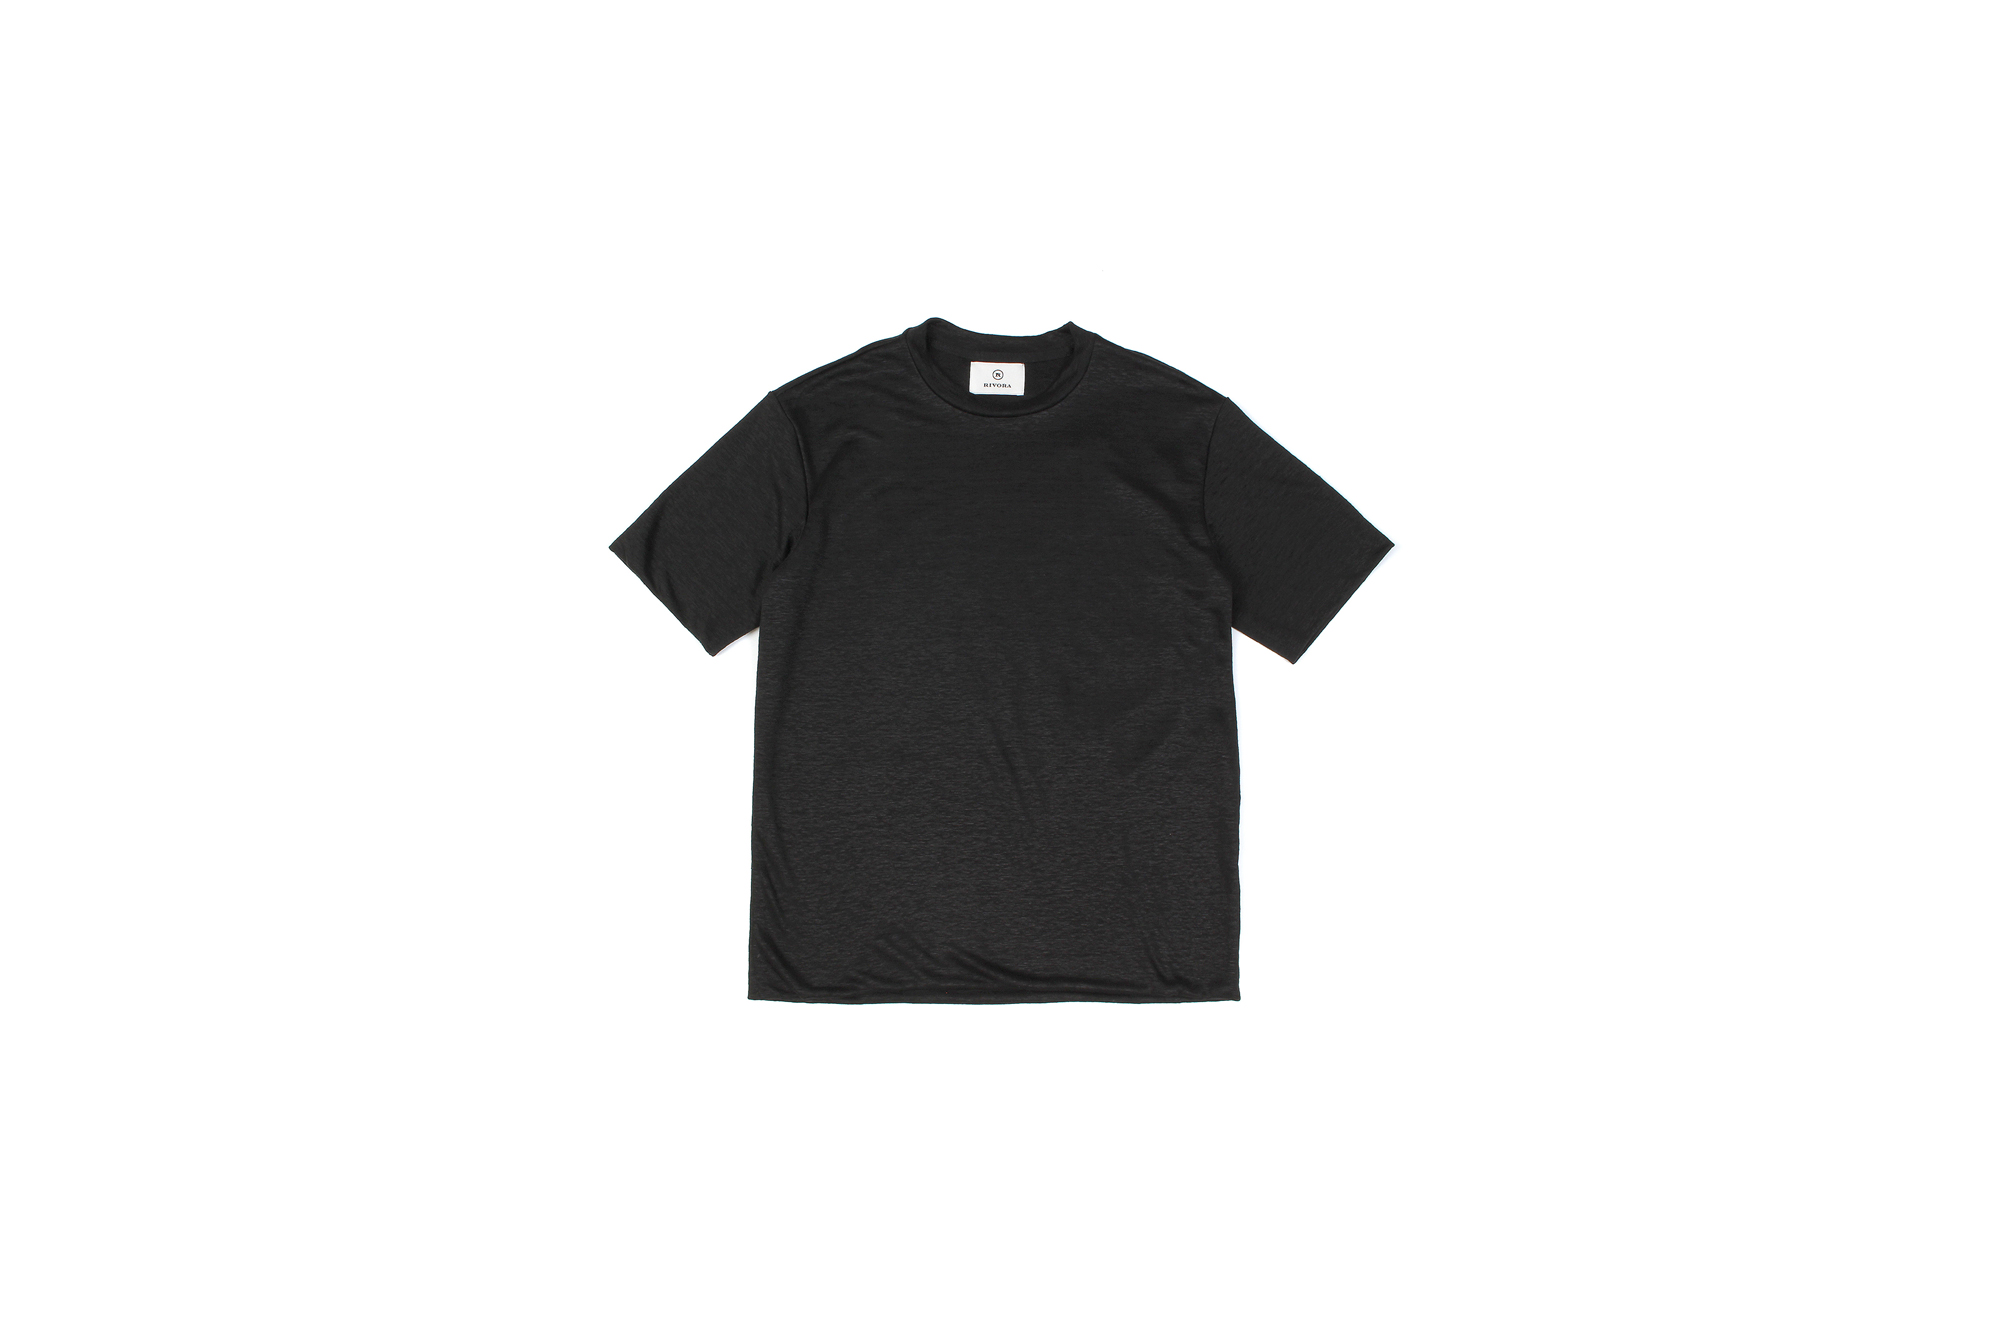 RIVORA (リヴォラ) Vintage Linen Layered T-Shirts ヴィンテージ リネン レイヤード Tシャツ BLACK (ブラック・010) MADE IN JAPAN (日本製) 2021 春夏新作 【入荷しました】【フリー分発売開始】愛知 名古屋 Alto e Diritto altoediritto アルトエデリット 半袖TEE